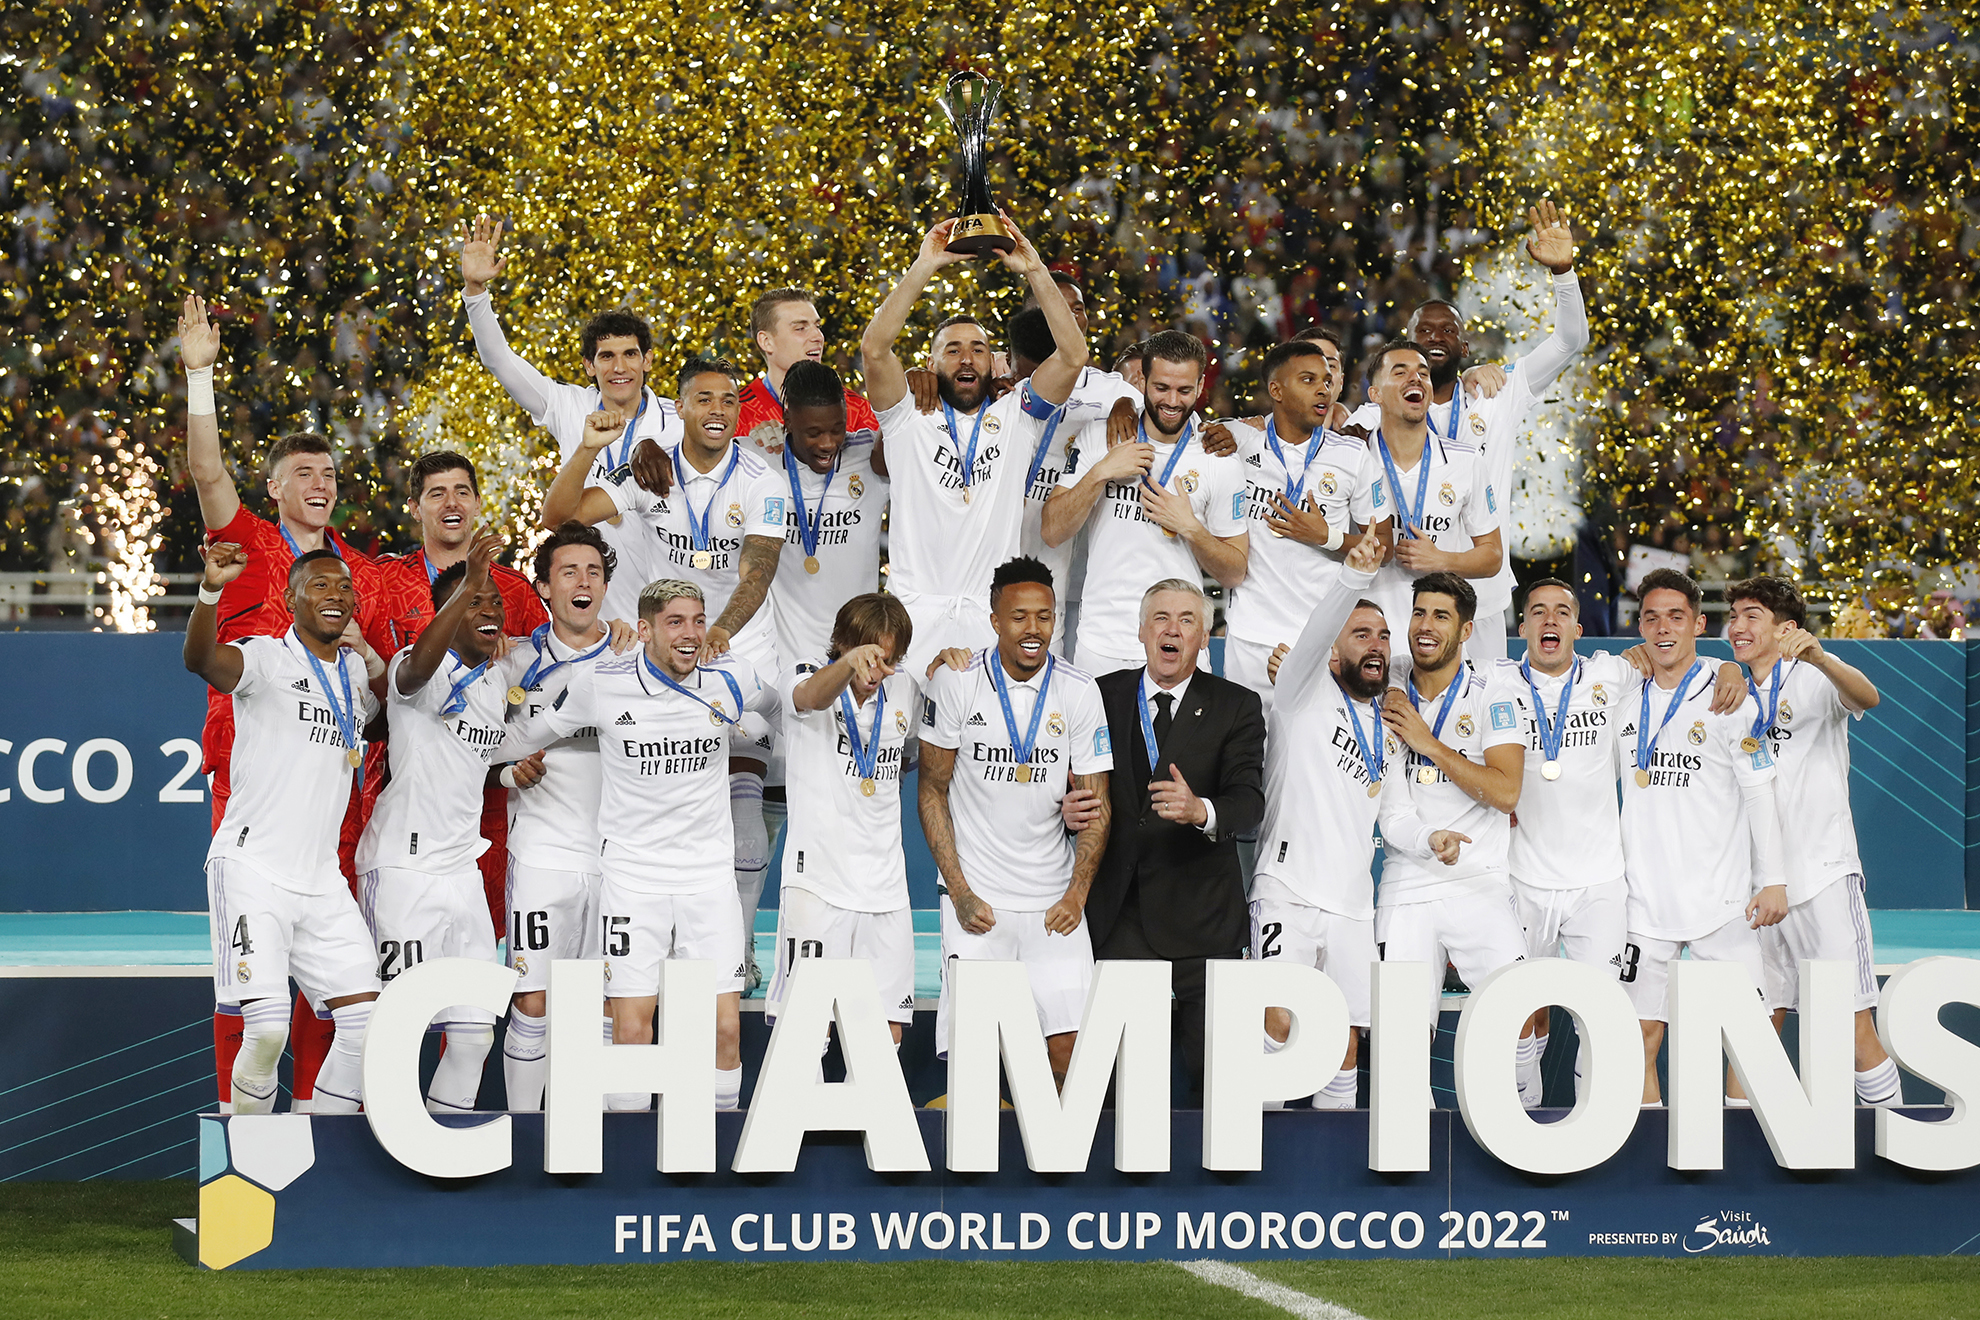 La plantilla del Real Madrid celebra en Riad su octavo título de campeones del Mundial de Clubes